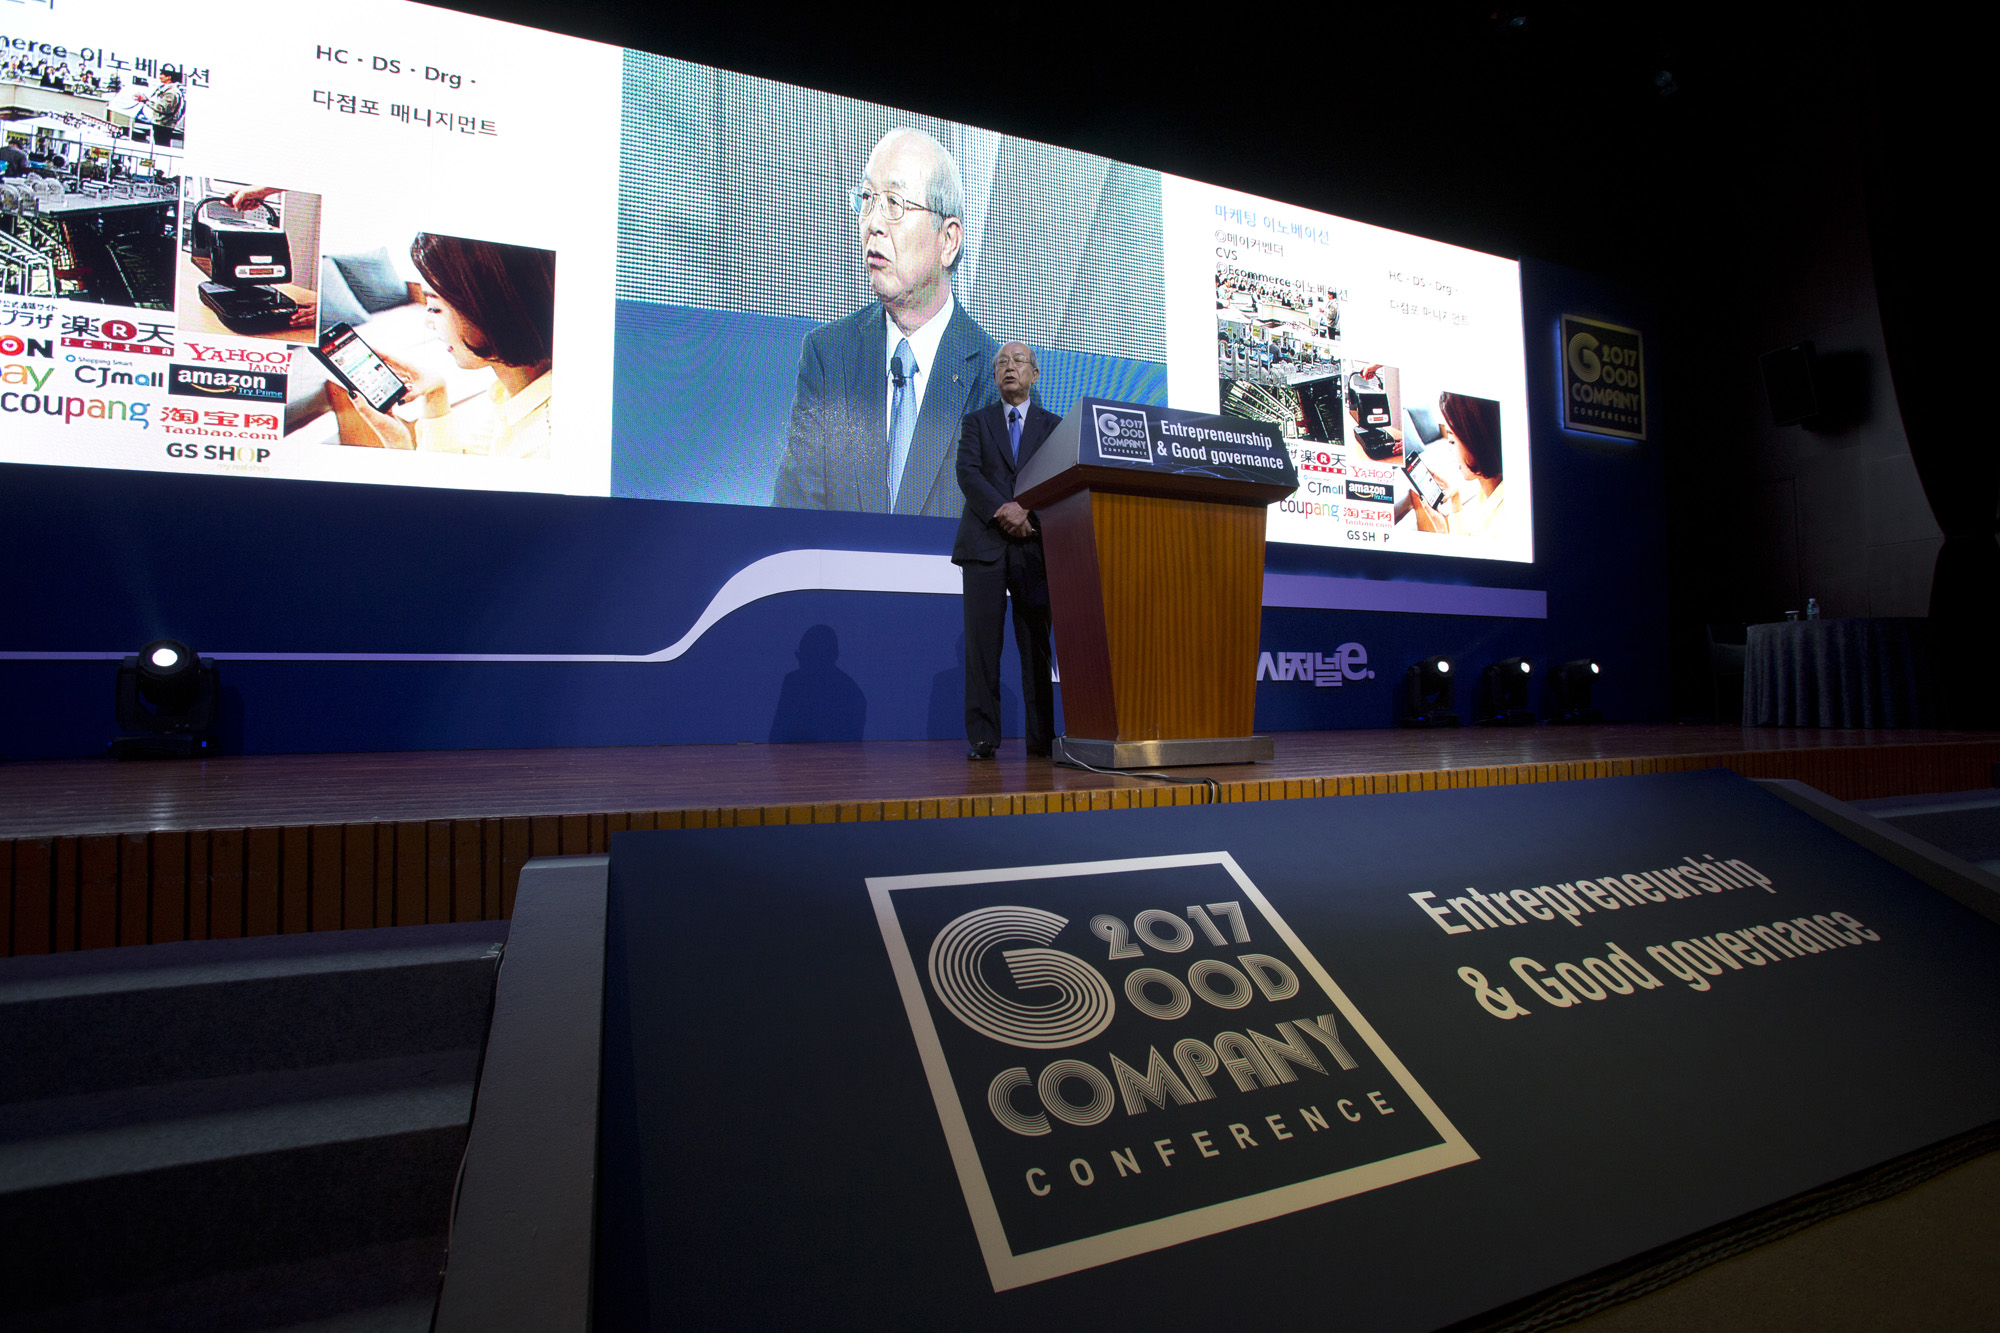 시사저널;GCC;굿컴퍼니 컨퍼런스;Good conpany conference